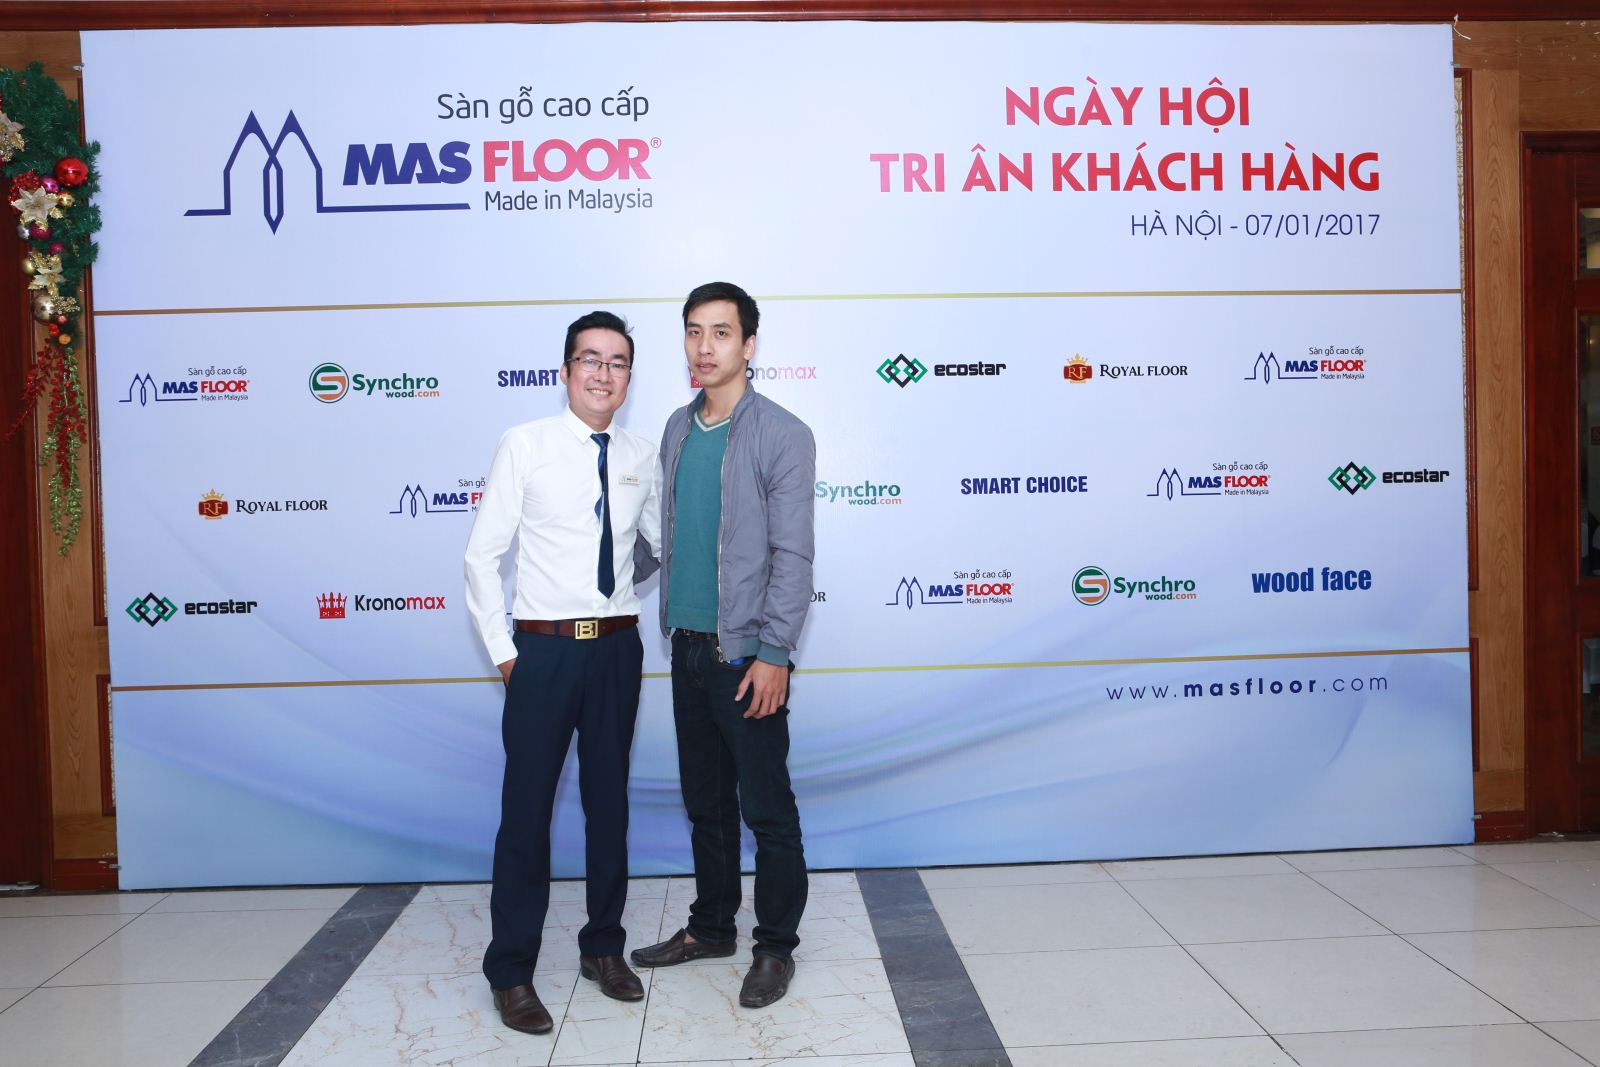 Tri ân khách hàng của sàn gỗ Masfloor được tổ chức tại Hà Nội